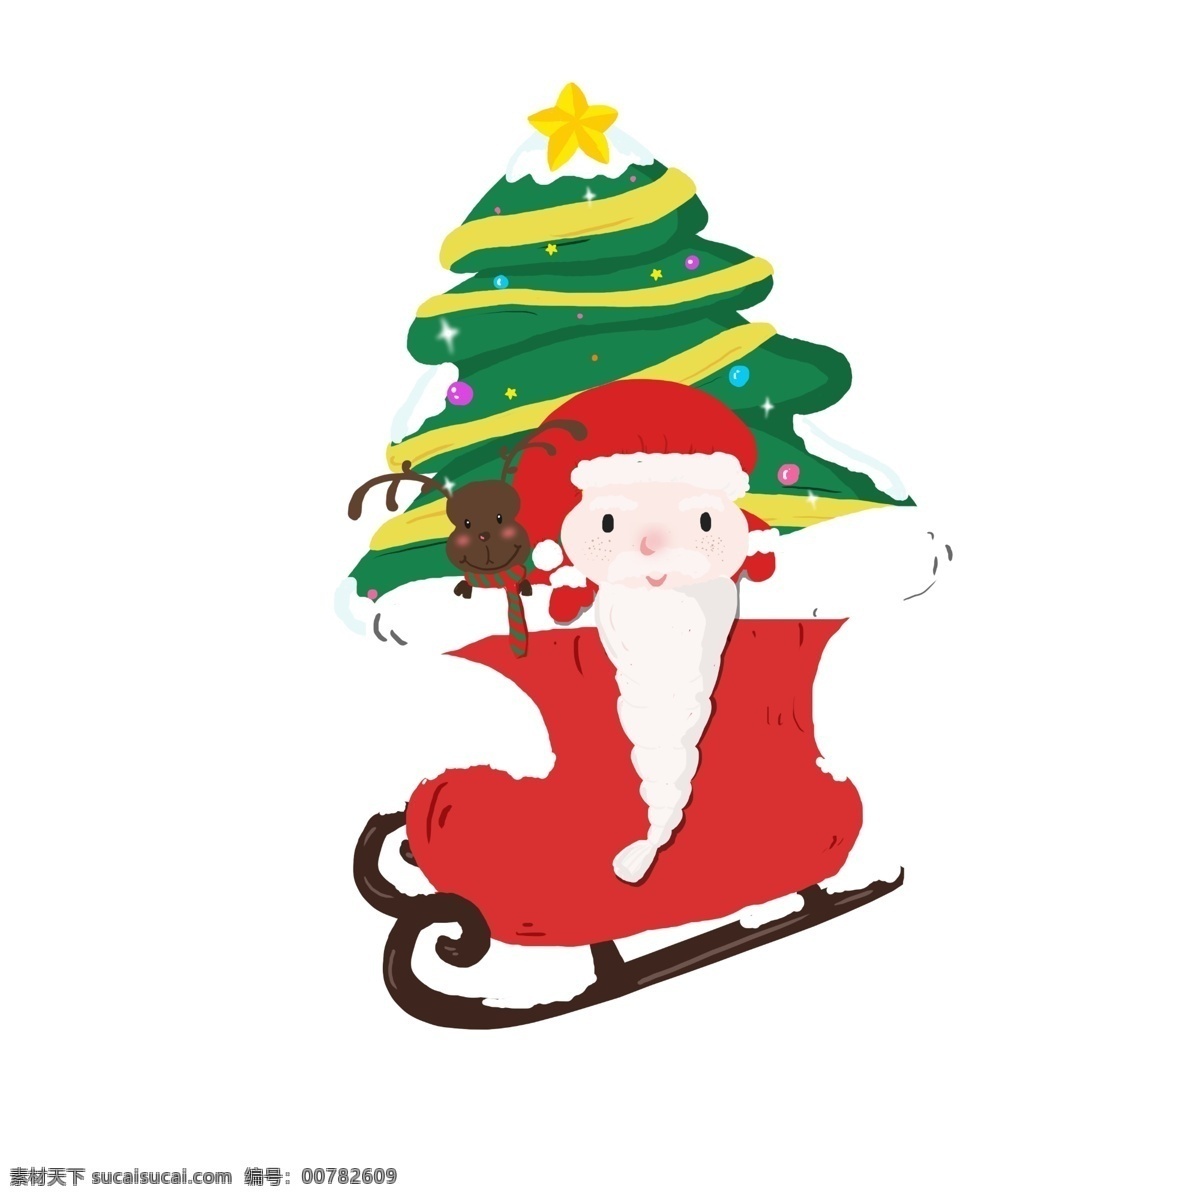 圣诞树 圣诞老人 滑雪 圣诞节 麋鹿 圣诞装饰 雪橇 欢度圣诞 拉 装饰 图案